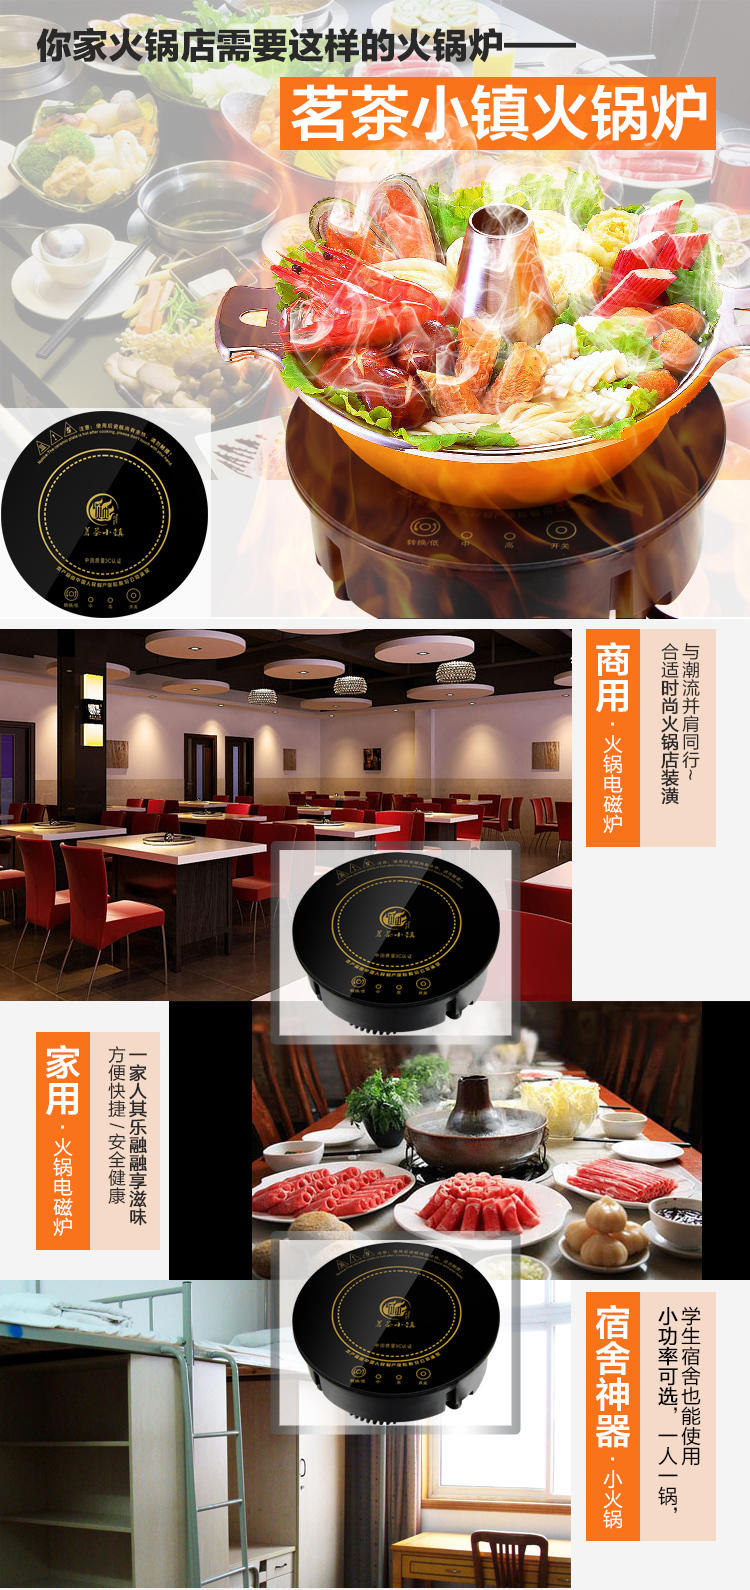 茗茶小镇 火锅电磁炉圆形嵌入式一人一锅火锅店餐厅专用火锅炉